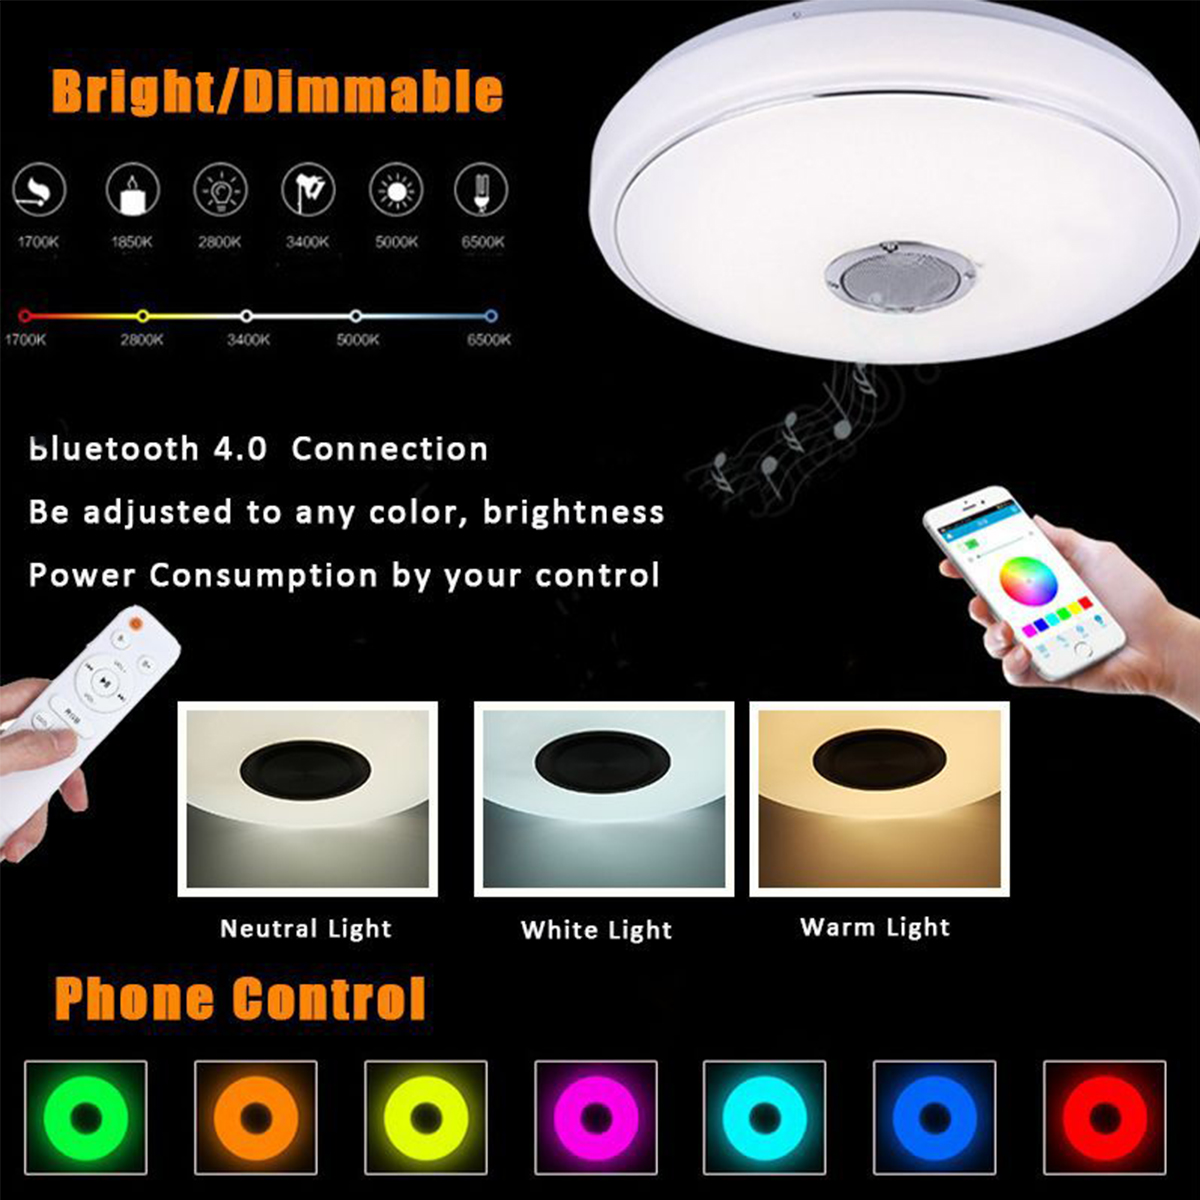 243660W-Smart-LED-Ceiling-Light-Lamp-RGB-bluetooth-APP-Music-Speaker-Dimmable-110-220V-1774553-7